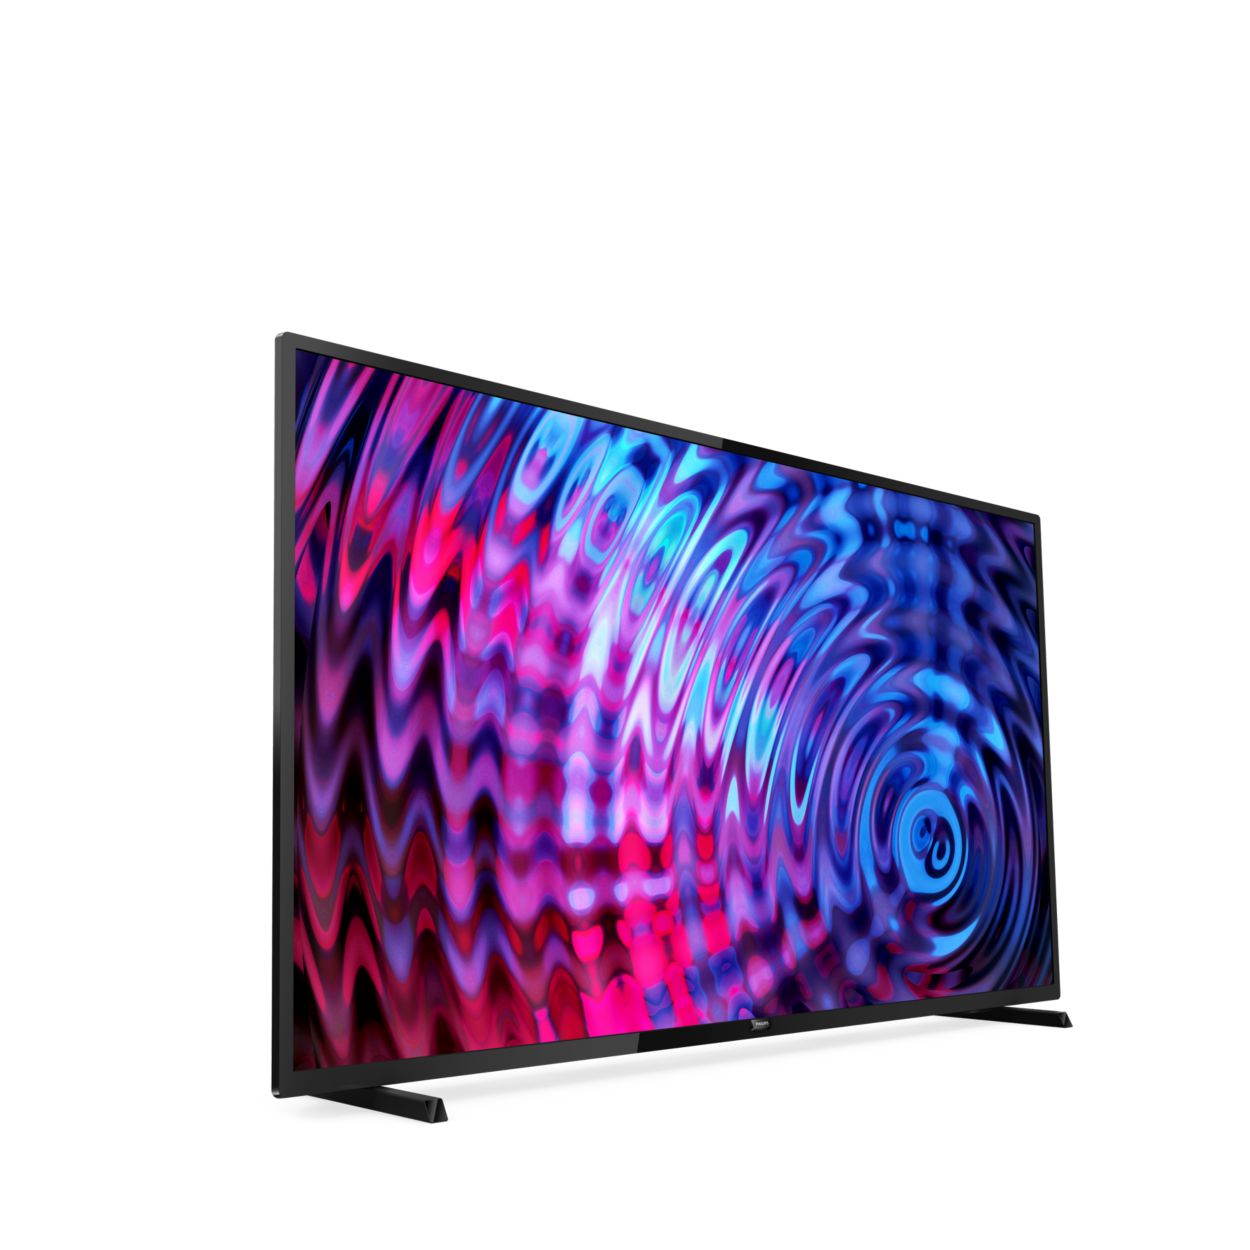 TV LED Full | 5500 Ultraflacher 43PFS5503/12 series HD Philips